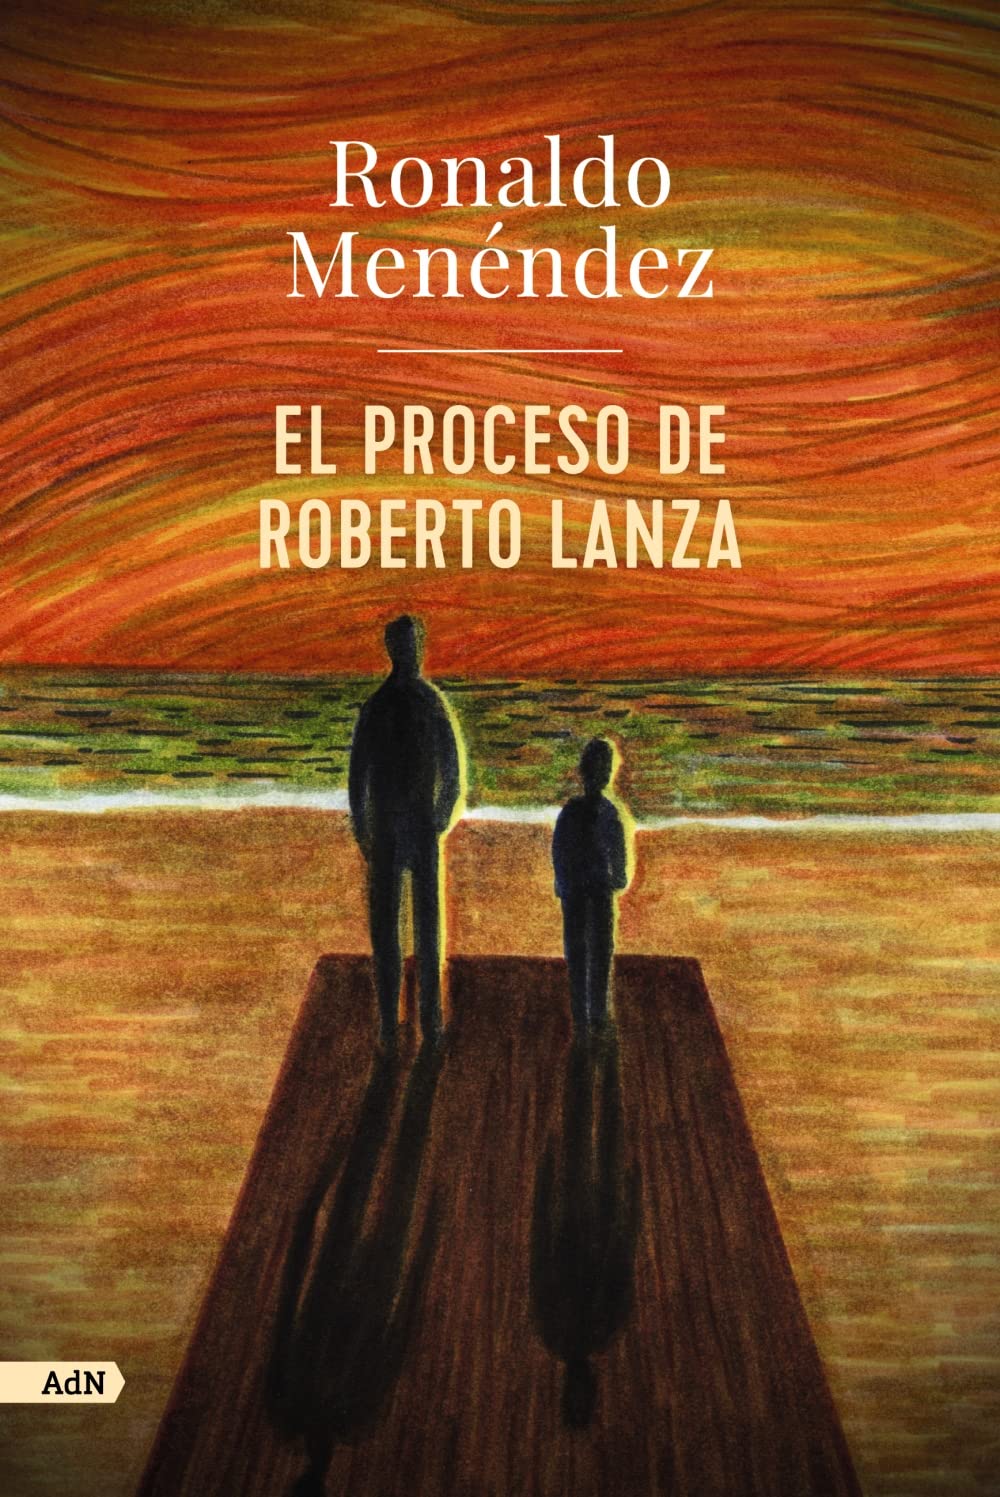 El nuevo proceso: risa y mueca en Roberto Lanza